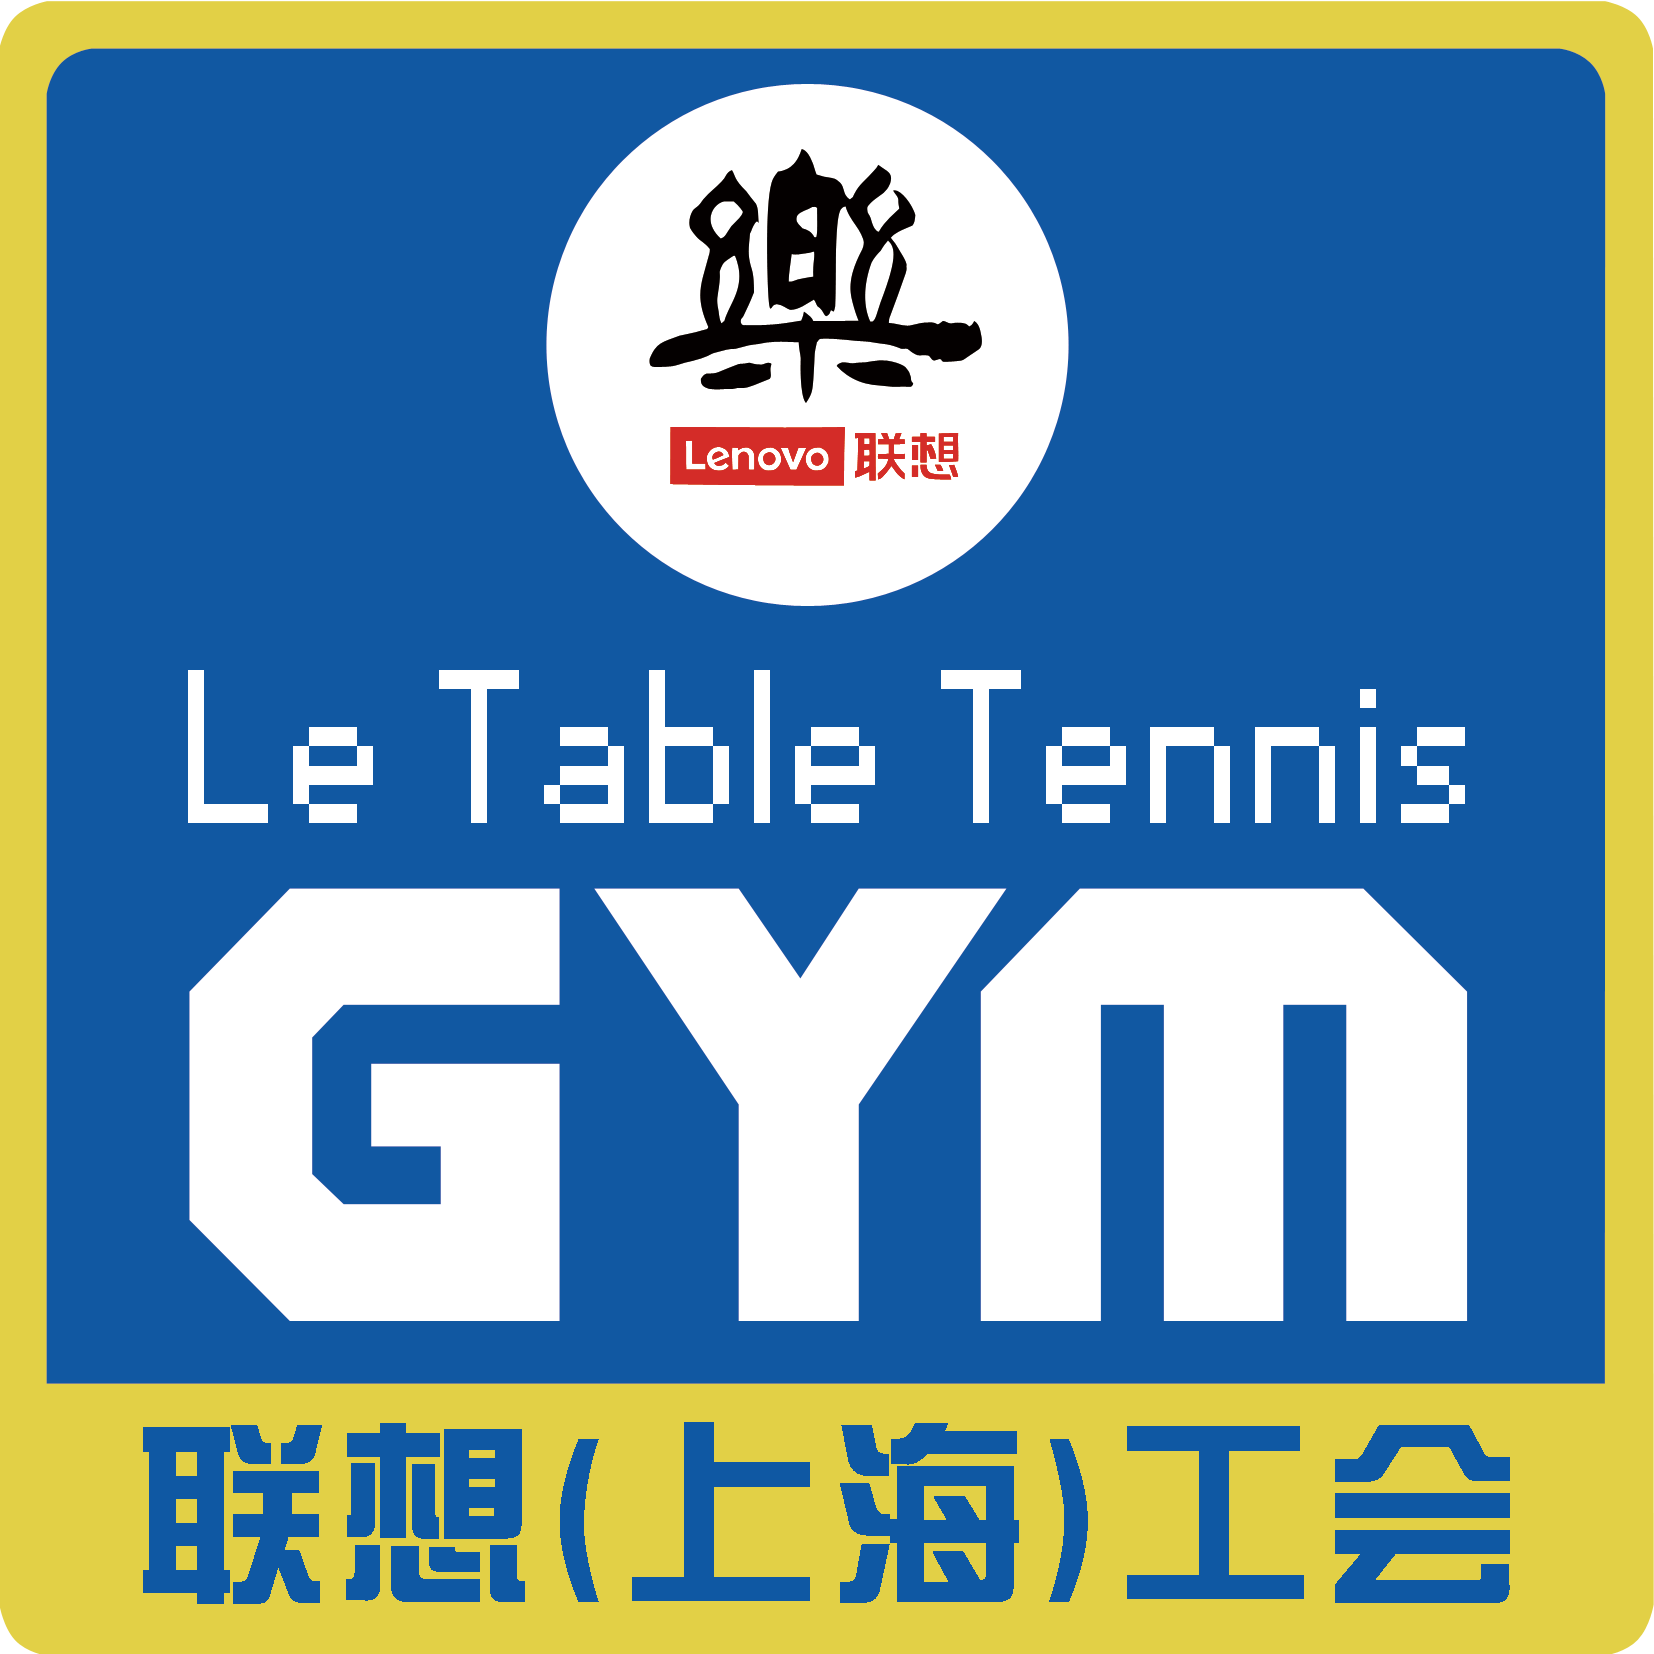 上海樂乒乓俱乐部